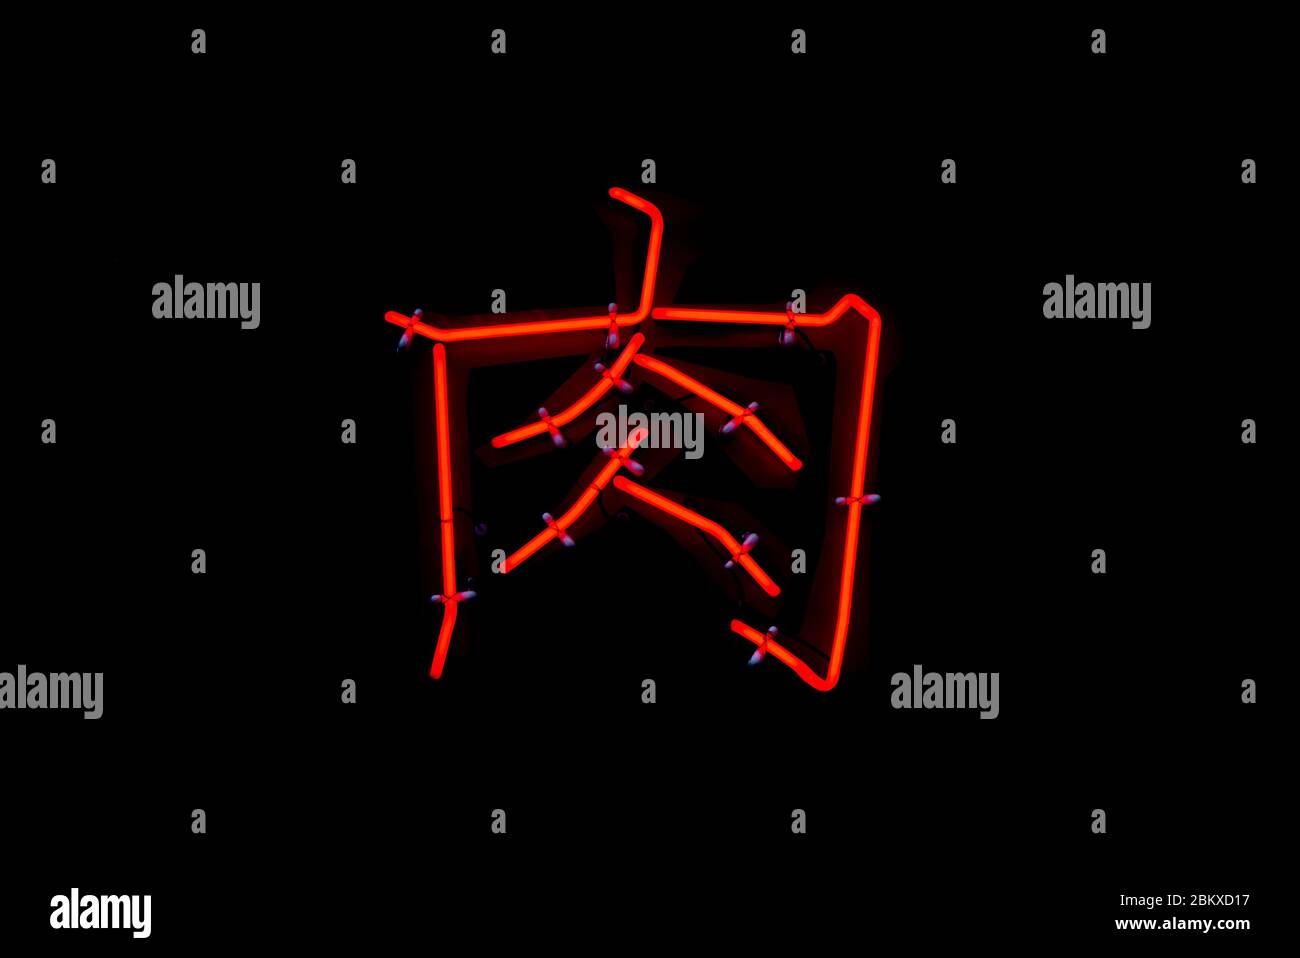 Scène dans laquelle le néon rouge du caractère « meat » écrit en caractères chinois brille dans le noir Banque D'Images